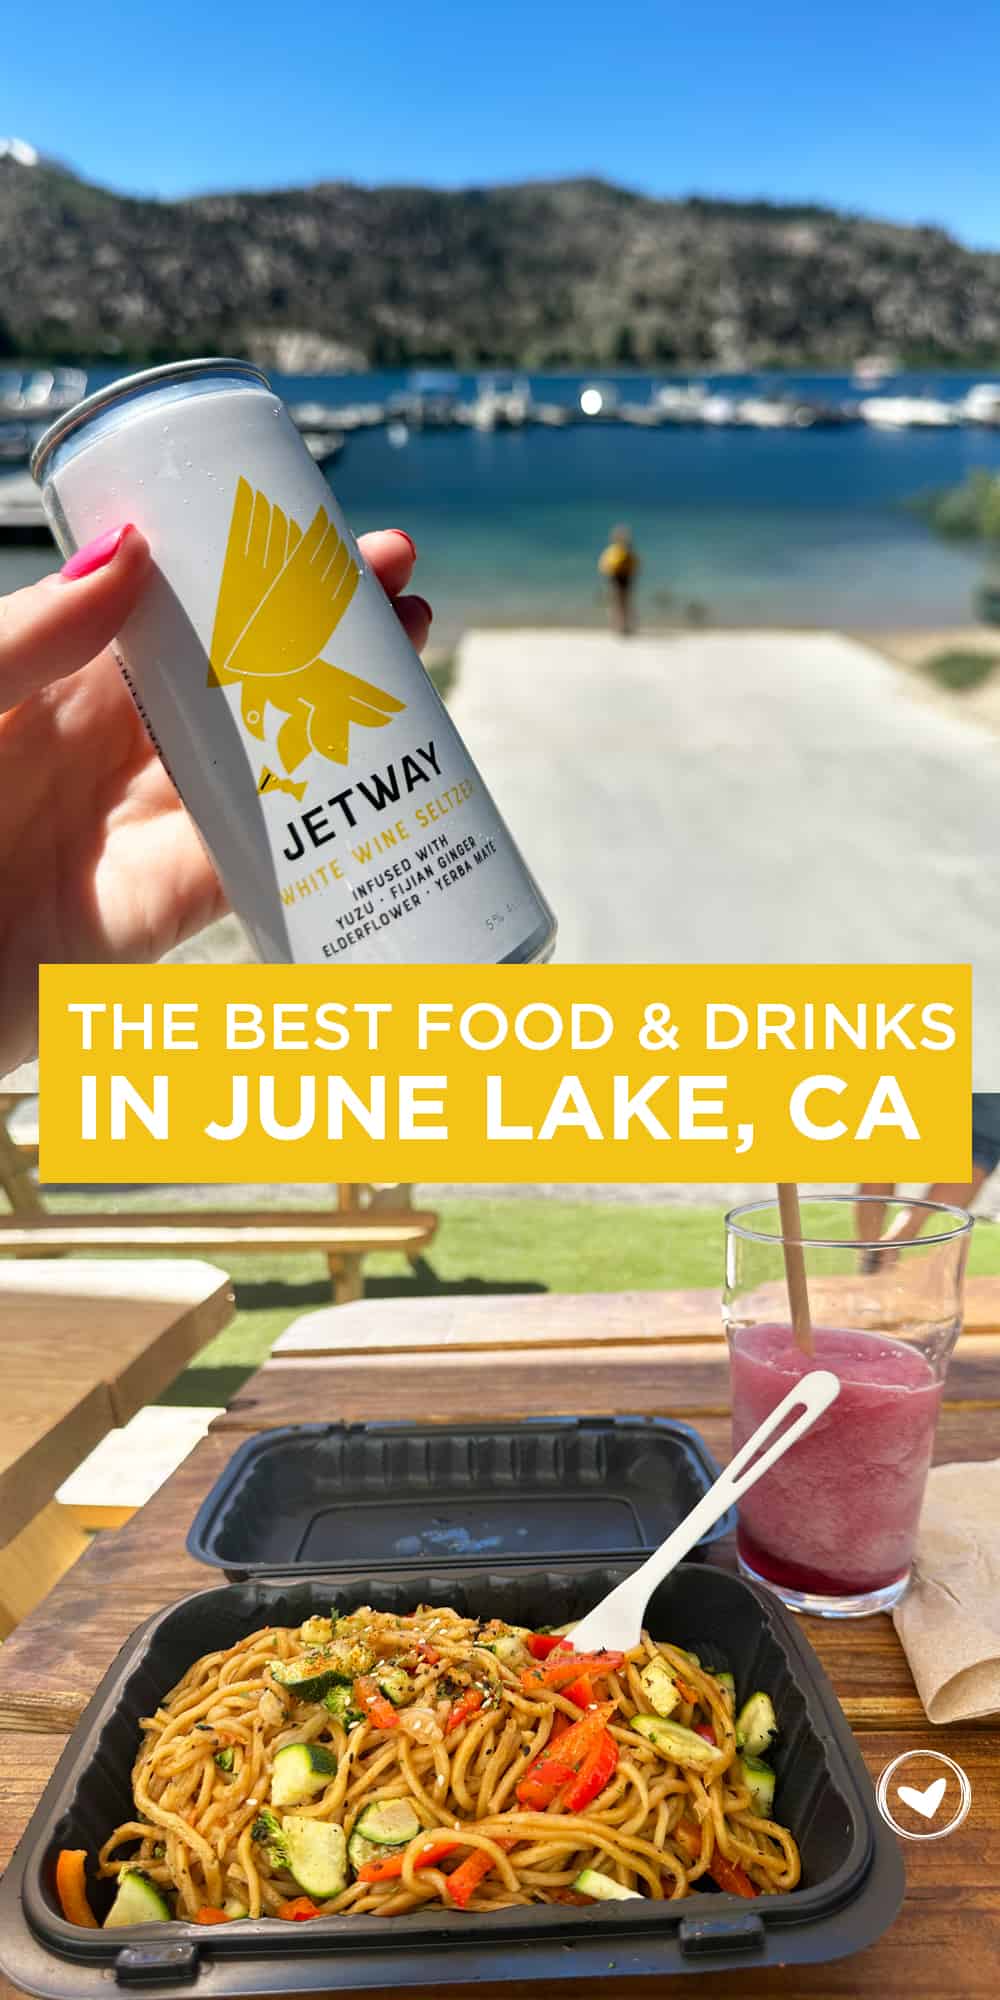 The Best Food & Drinks in June Lake, CA